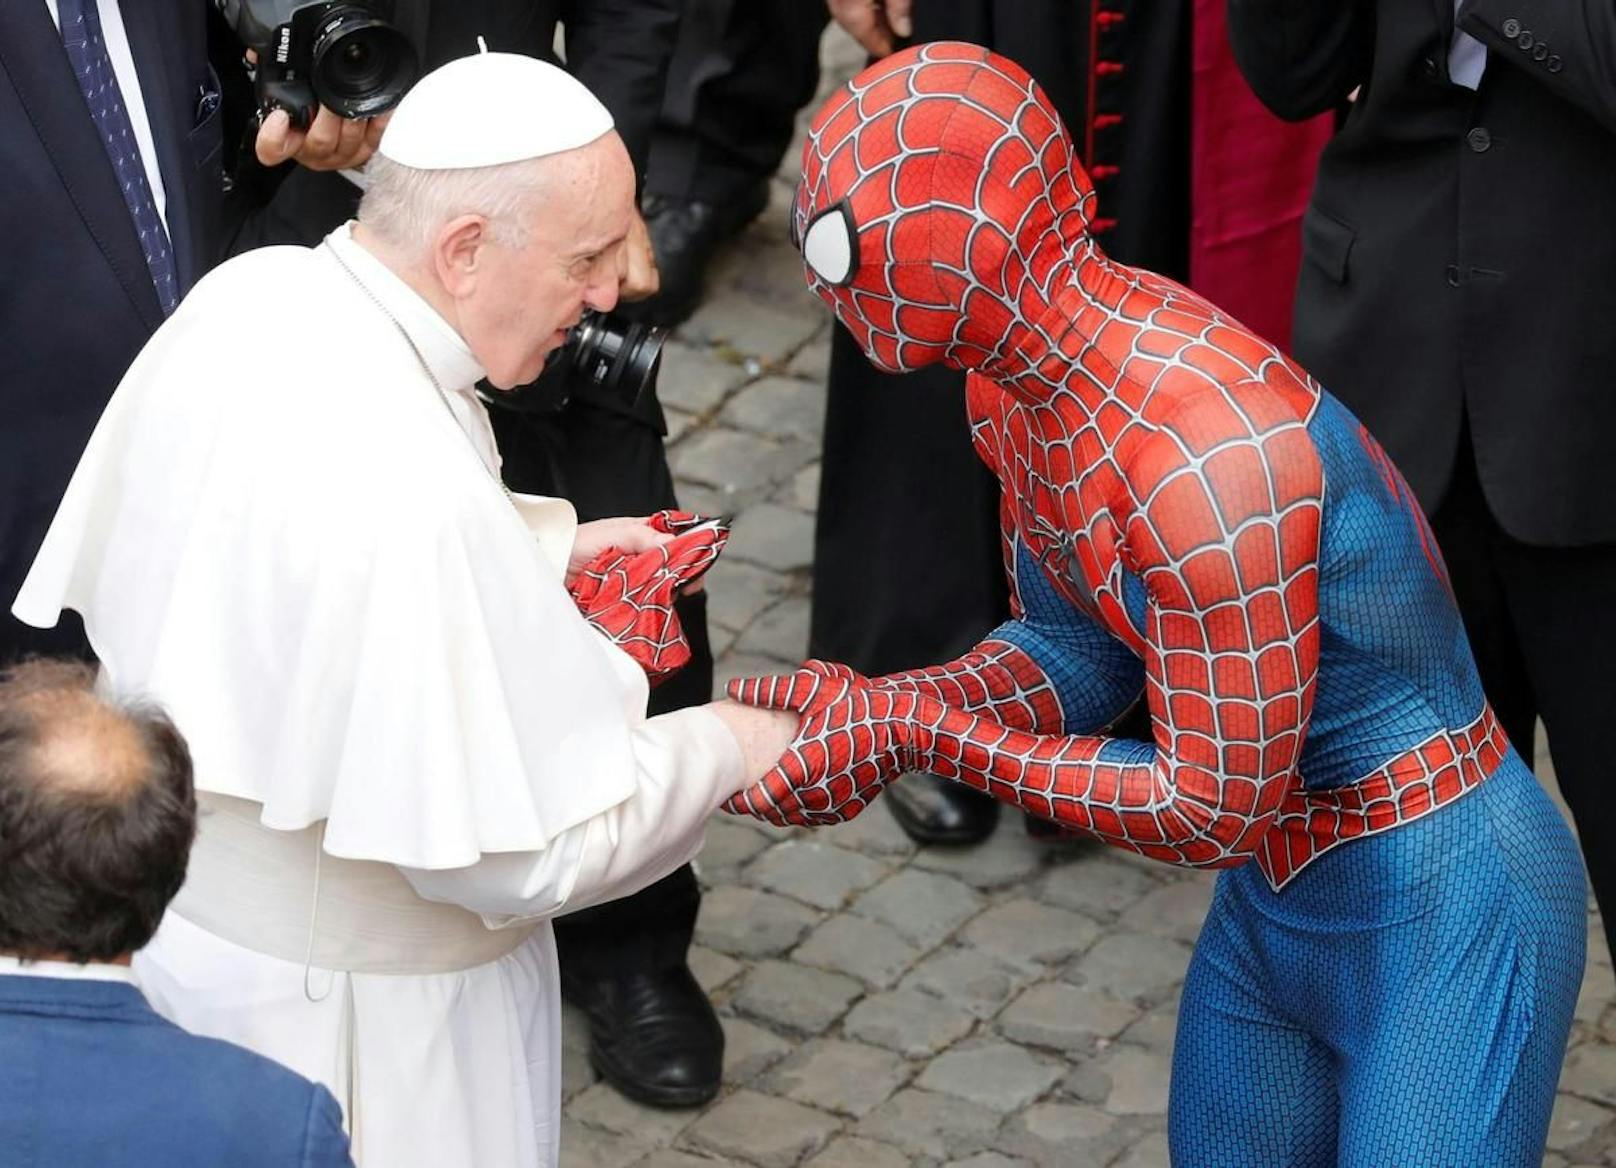 Superheld trifft Pontifex: Bei der Generalaudienz im Vatikan am 23. Juni 2021 hat ein als Spiderman verkleideter Mann Papst Franziskus begrüßt.